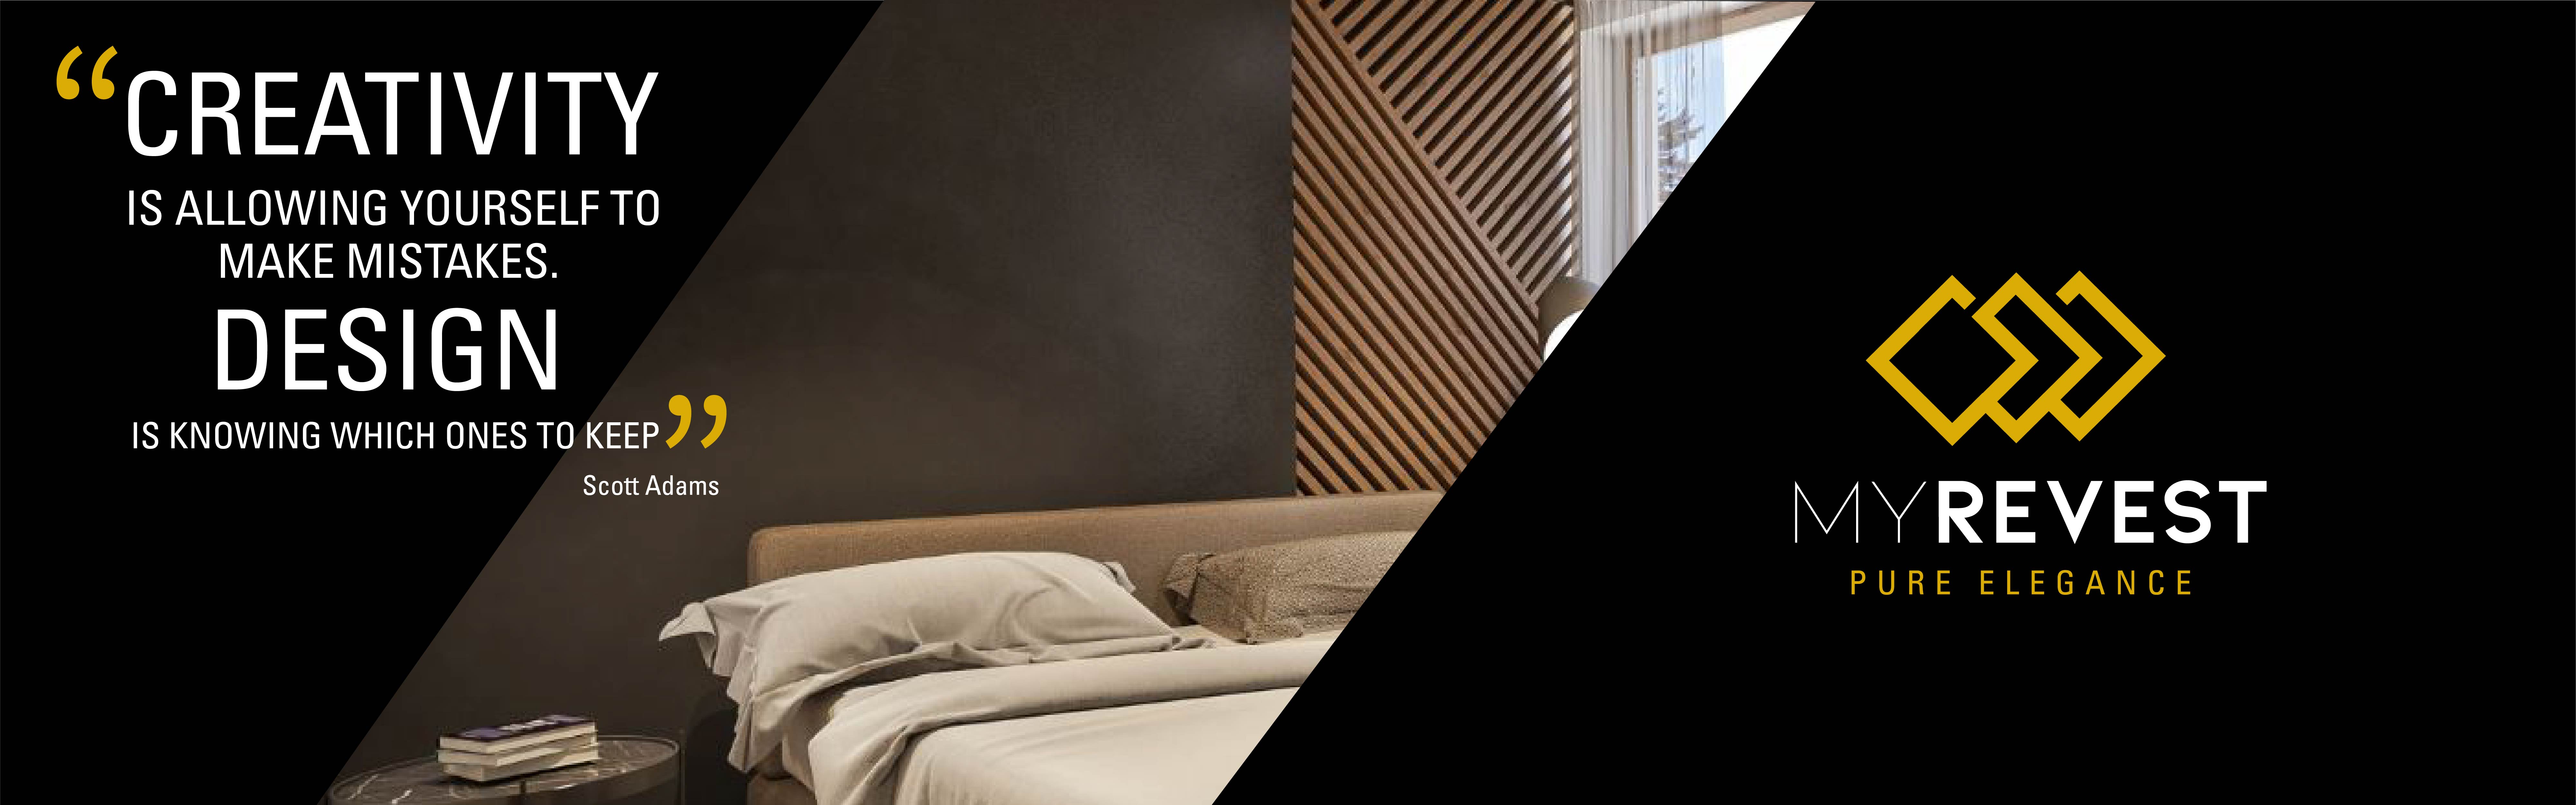 Microcement coating op een minimalistische slaapkamermuur naast het MyRevest logo